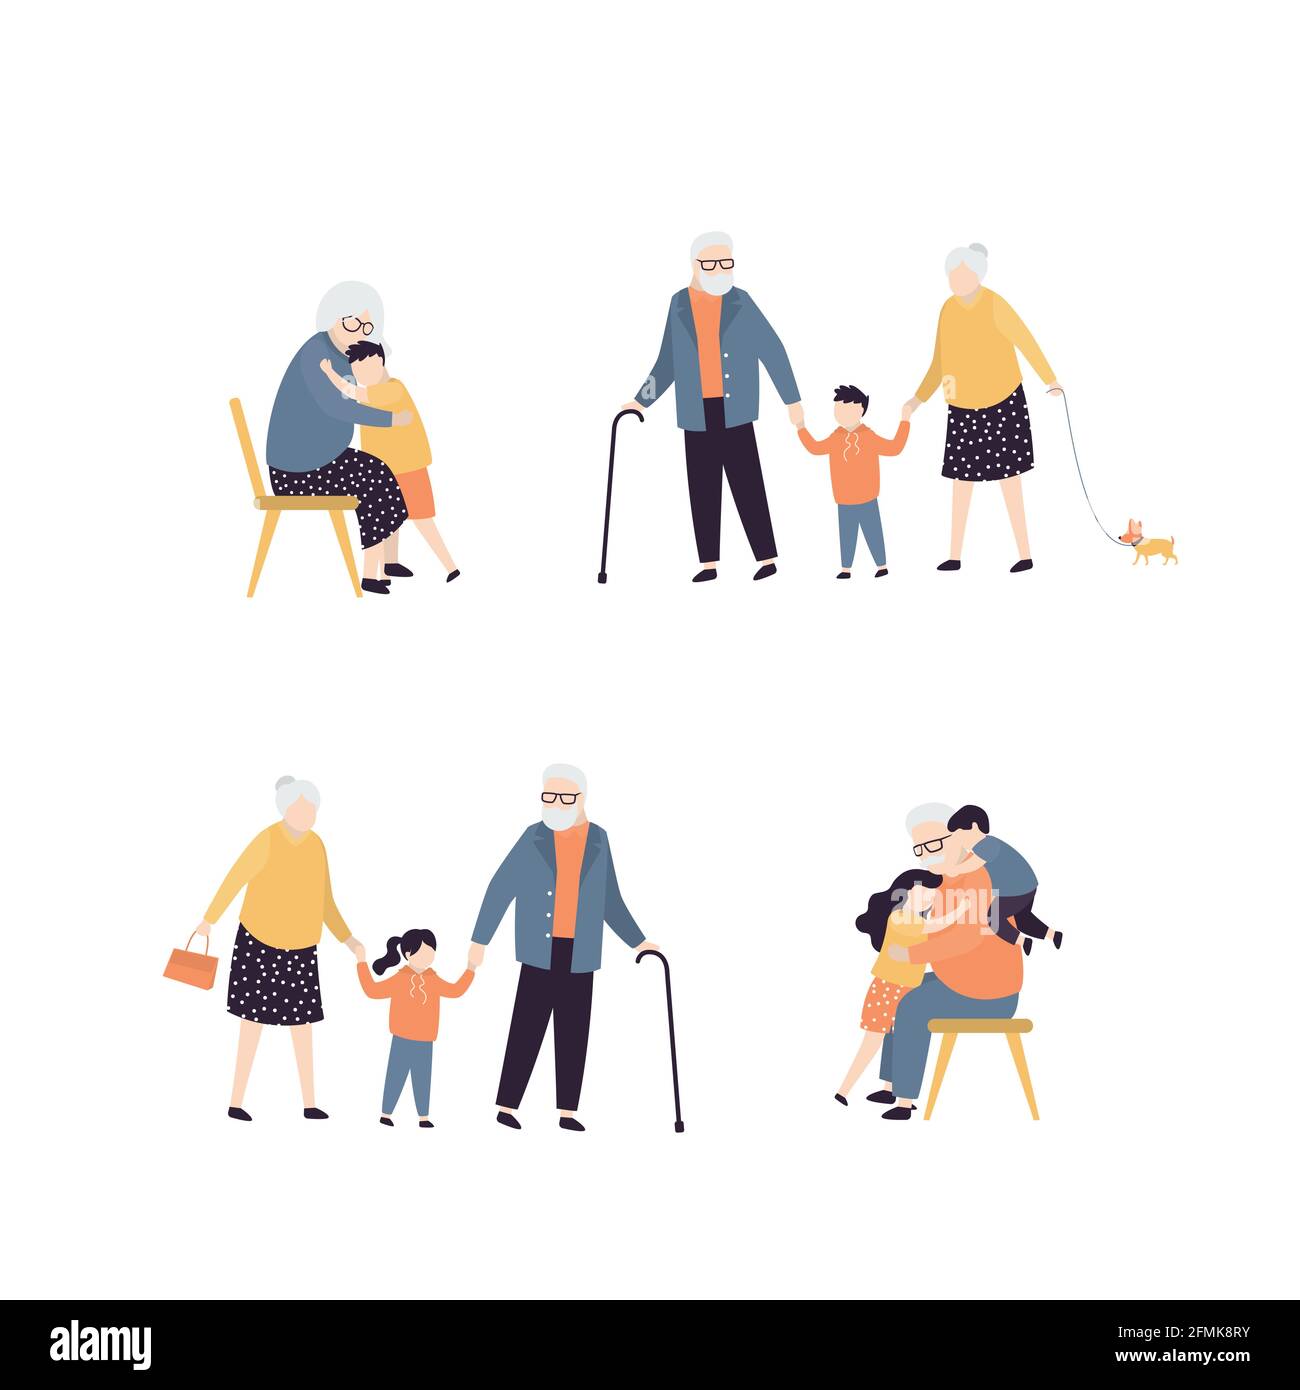 Sammlung verschiedener Aktivitäten mit Großeltern. Nette Großmutter umarmt mit Enkel. Großvater viel Spaß mit kleinen Kindern. Gruppe älterer Menschen Stock Vektor